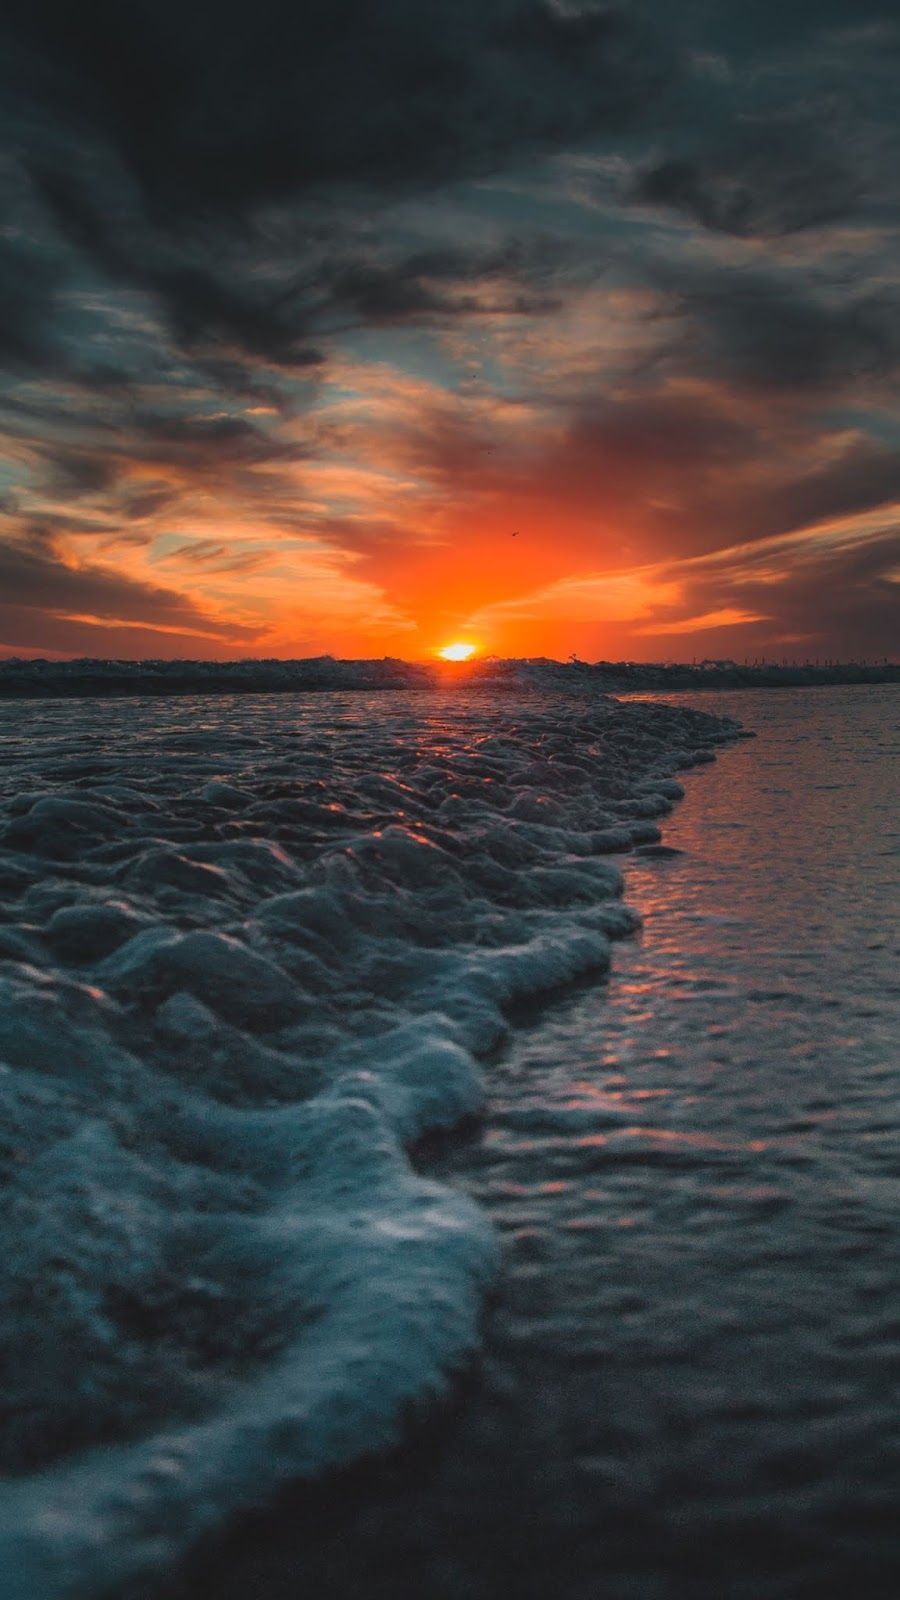 Foto Aesthetic Di Pantai Sunset - IMAGESEE